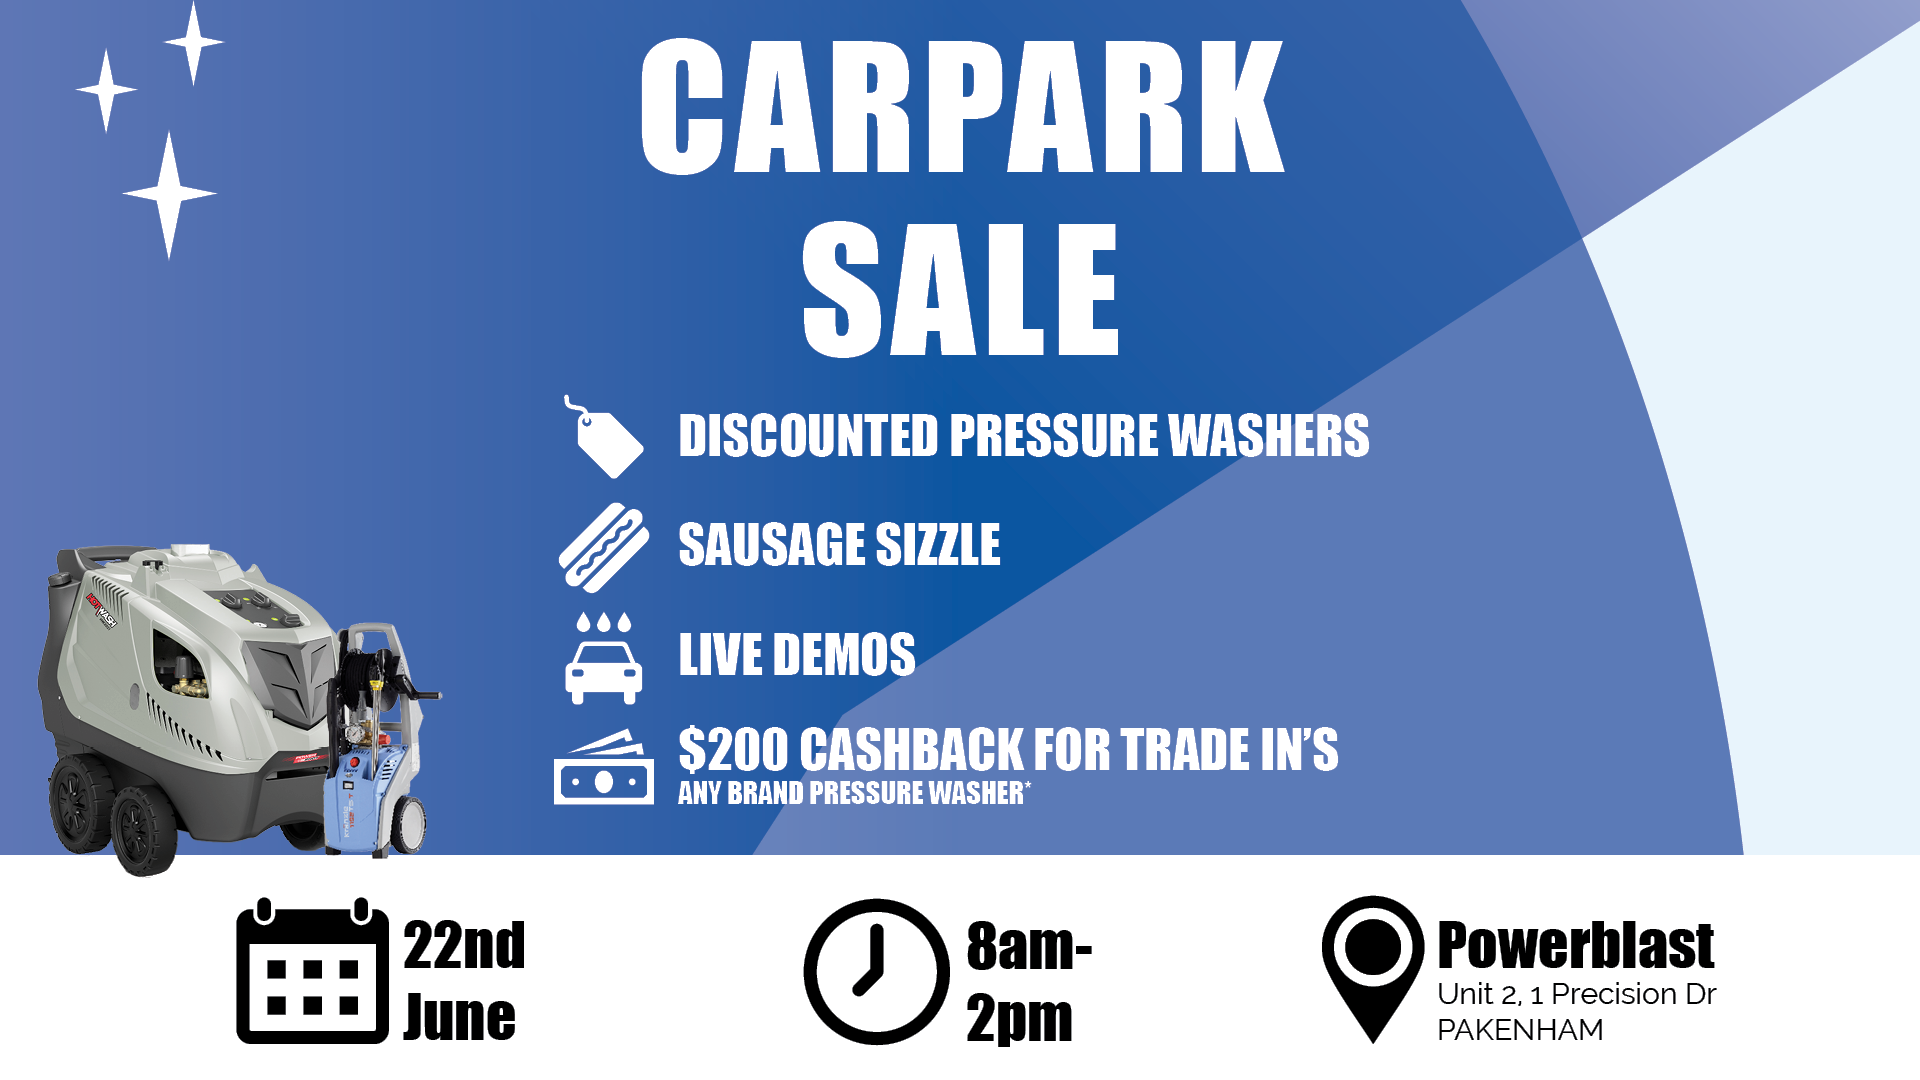 June 22nd Carpark Sale Announcement